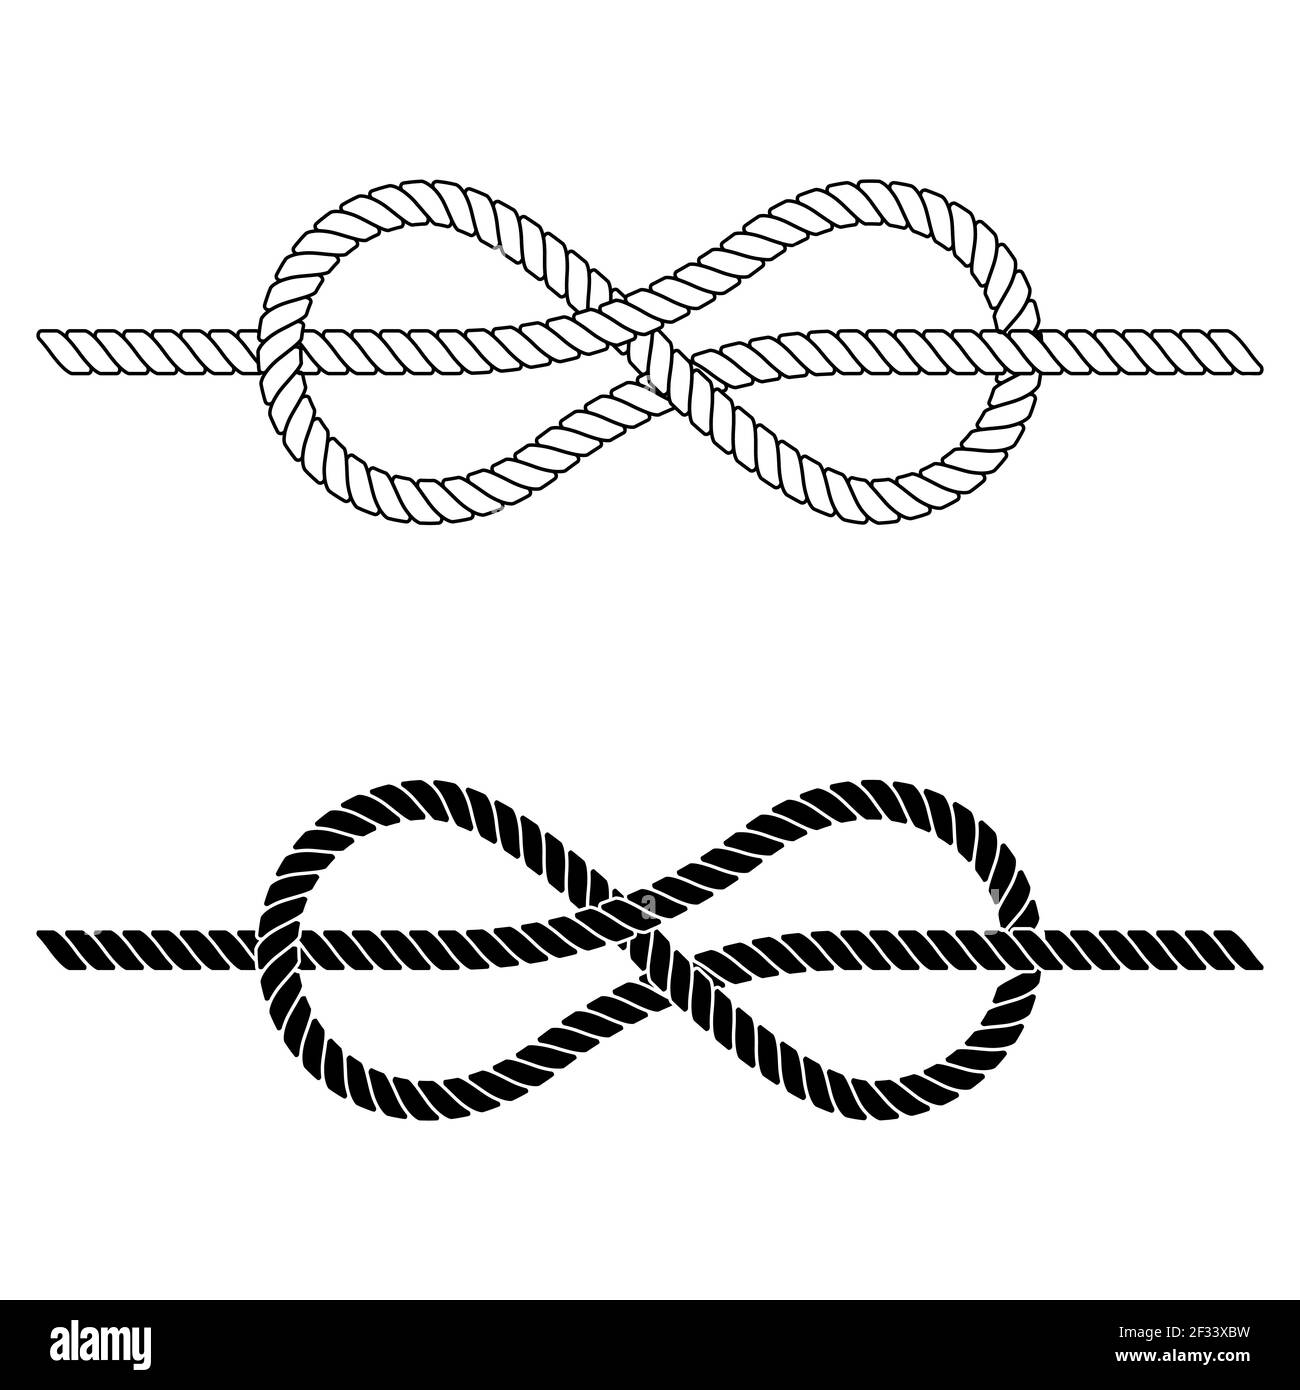 la corda intrecciata è legata in un nodo di mare, il nodo di corda vettoriale fatto di merletto è un simbolo di coesione, stretti legami lavoro di squadra Illustrazione Vettoriale